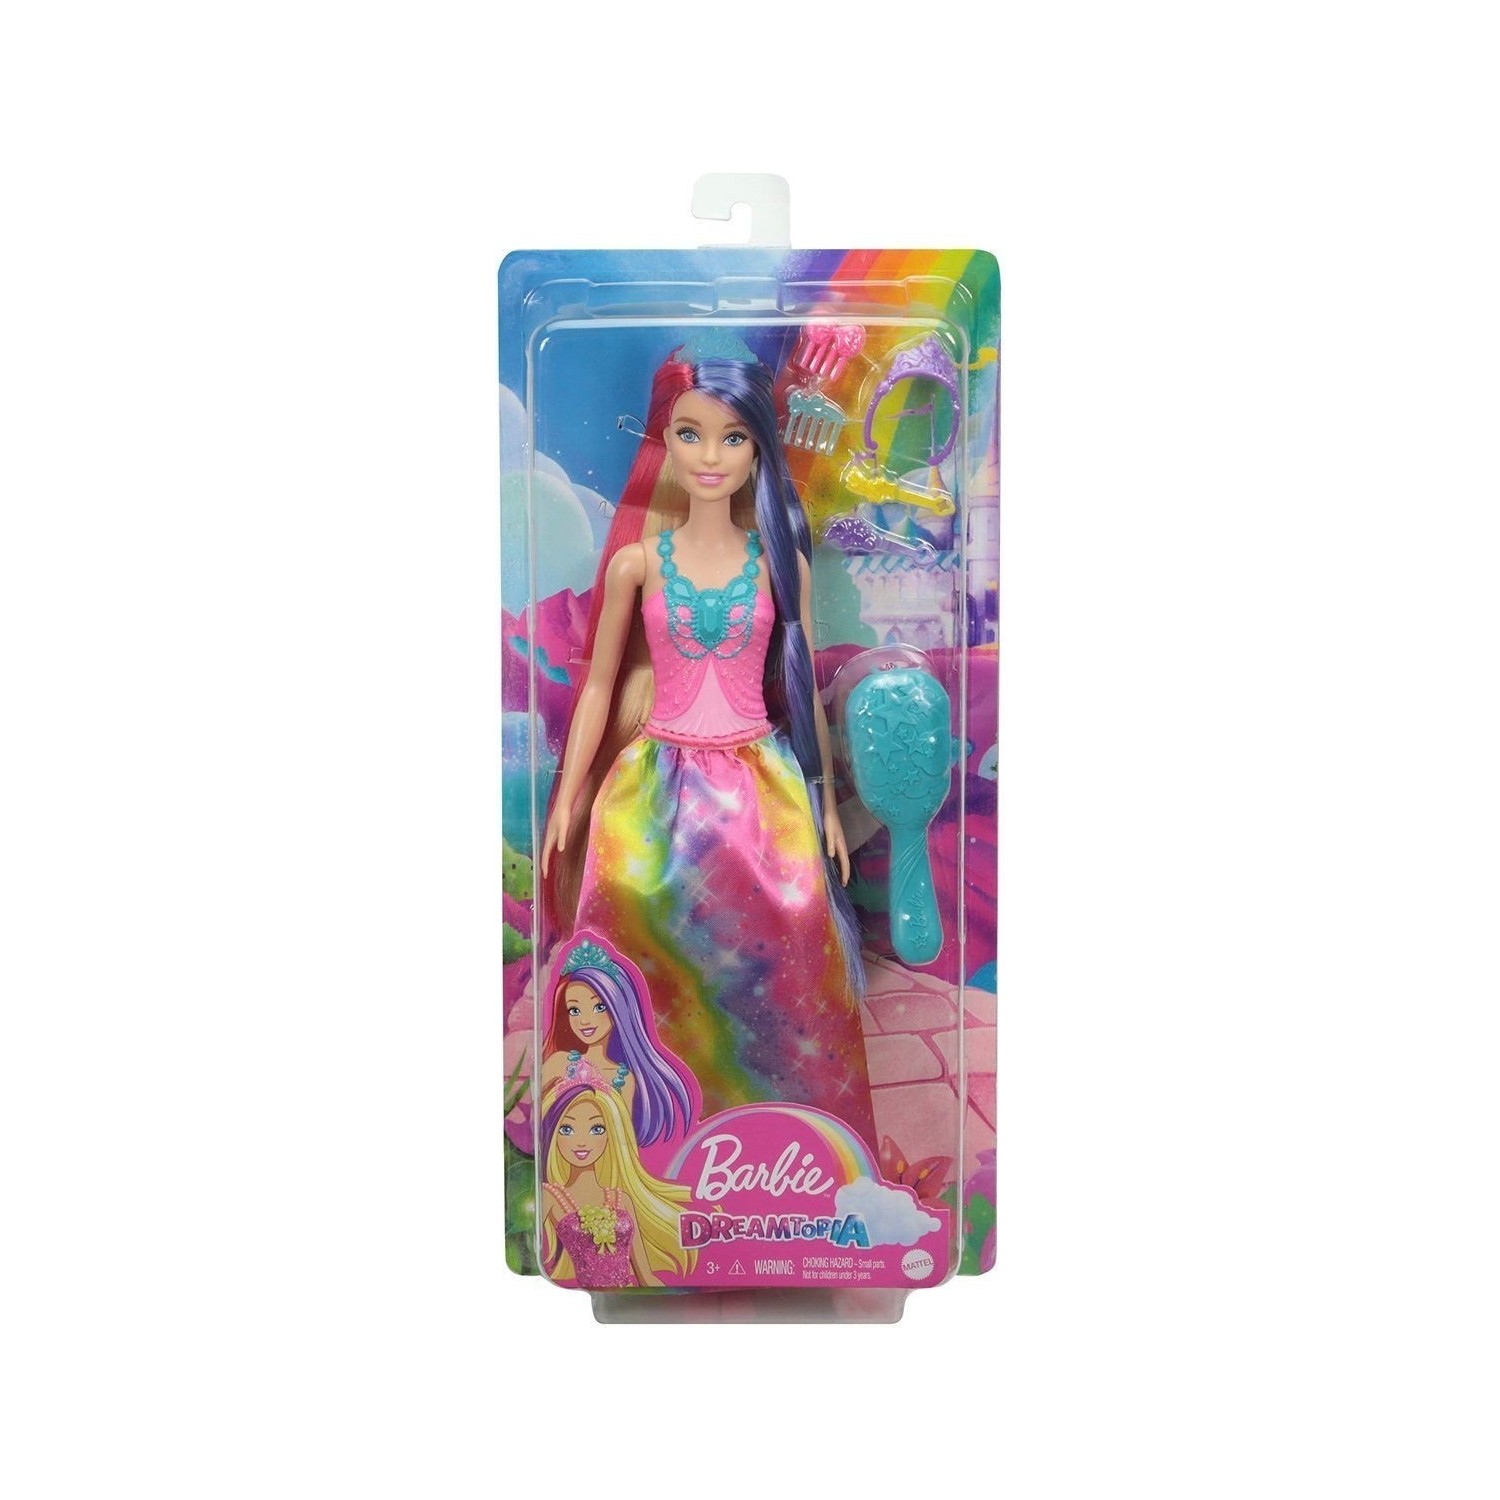 Кукла Barbie Dreamtopia Long Haired Dolls GTF37 кукла barbie дримтопия принцесса 2 fxt15